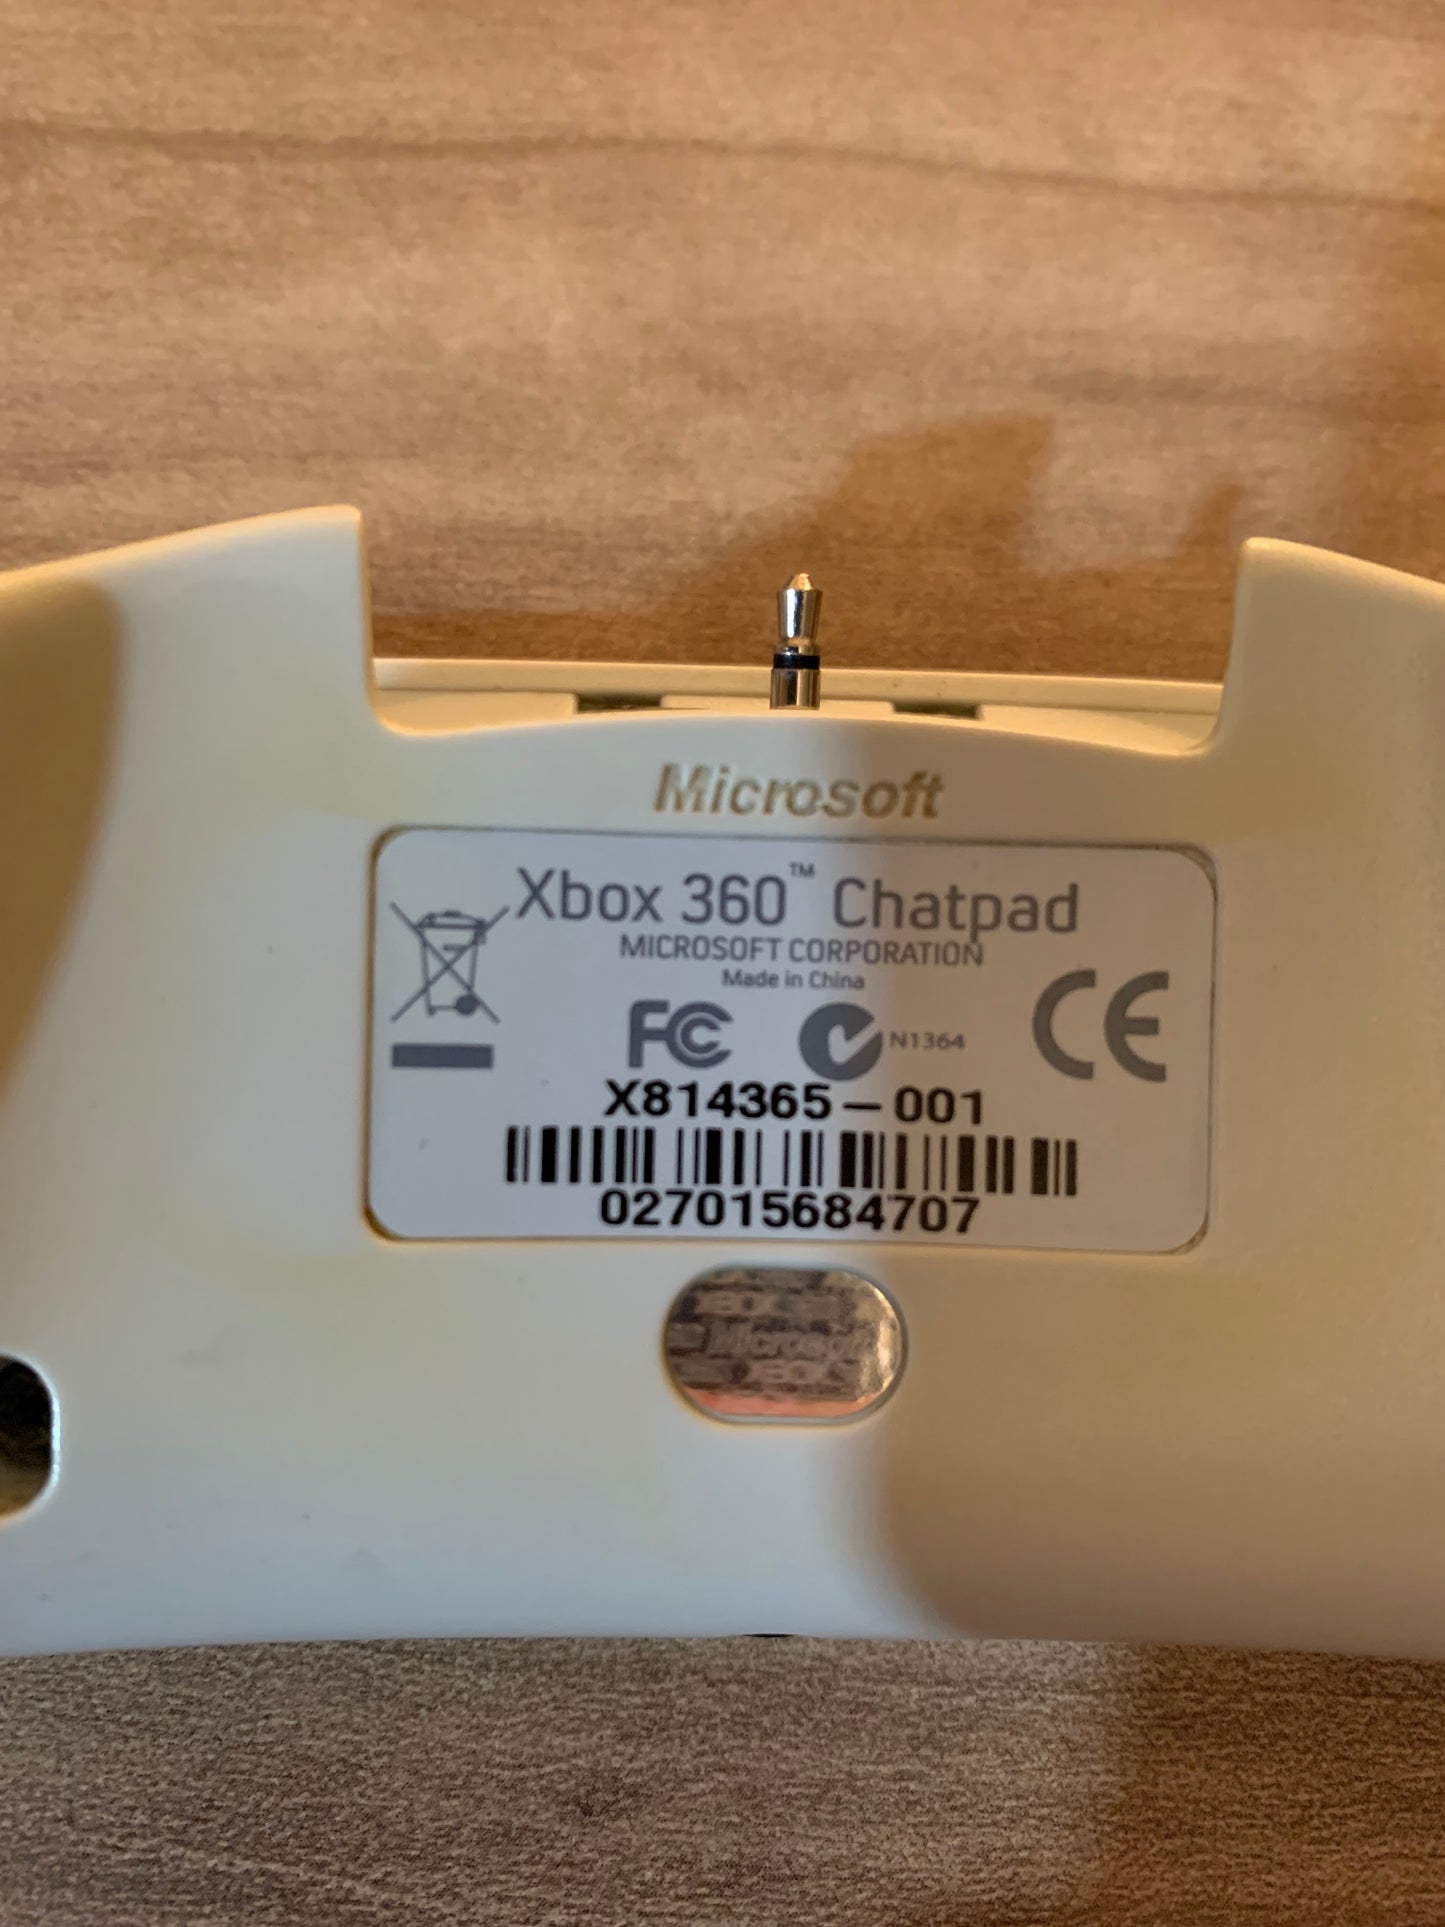 Microsoft XBOX 360 | WIRELESS KEYPAD CHATPAD | MODEL X814365-001